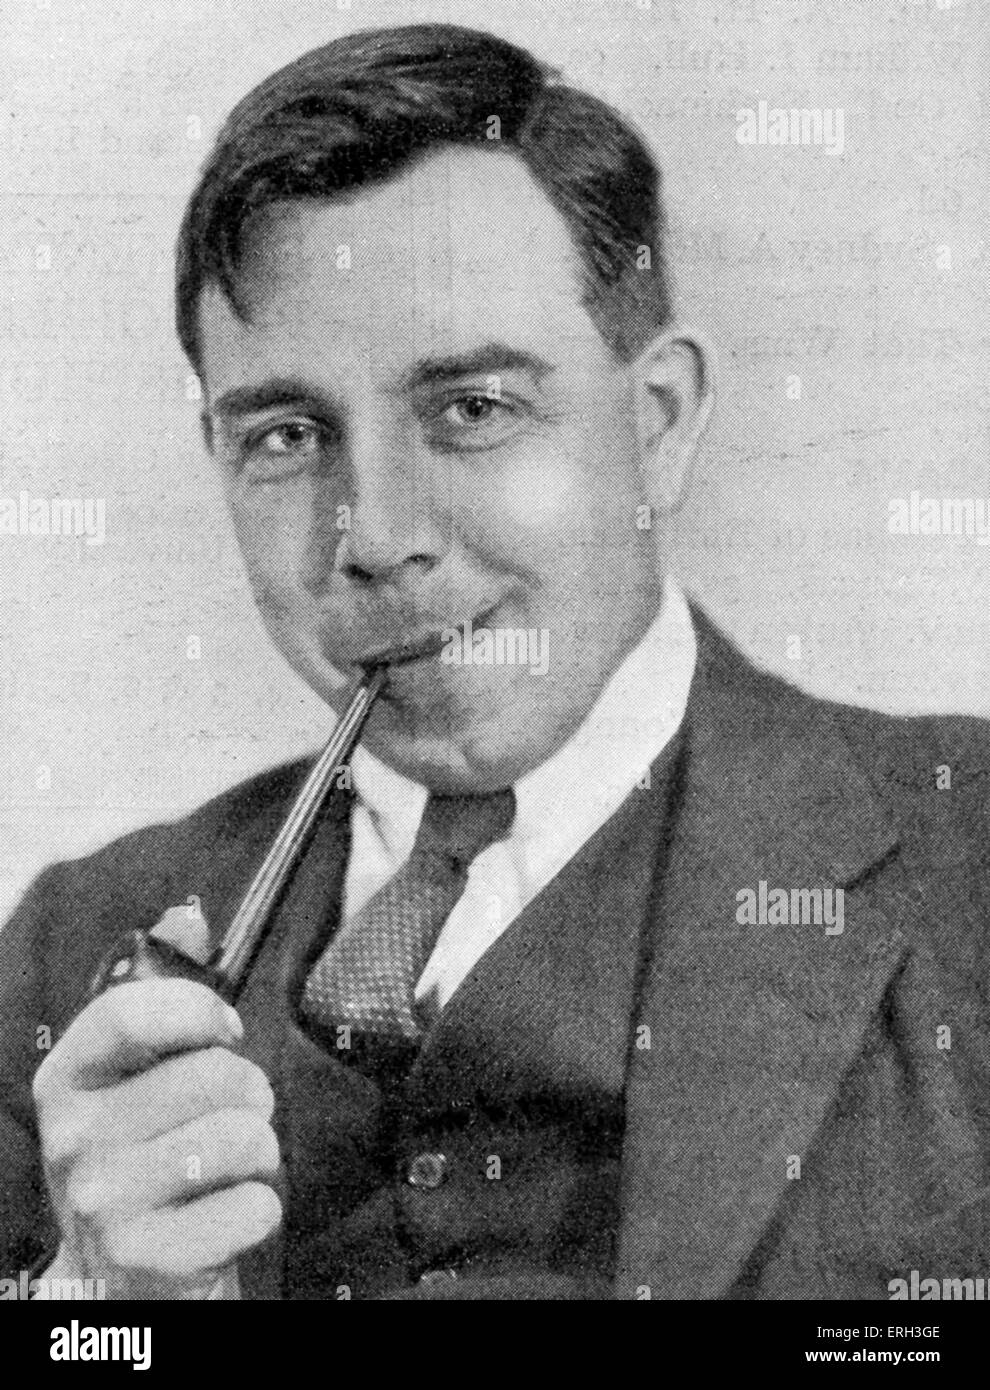 J. B. Priestley, scrittore inglese ed emittente, 13 settembre 1894 - 14 agosto 1984. Fotografia ritratto da Howard Coster. Foto Stock